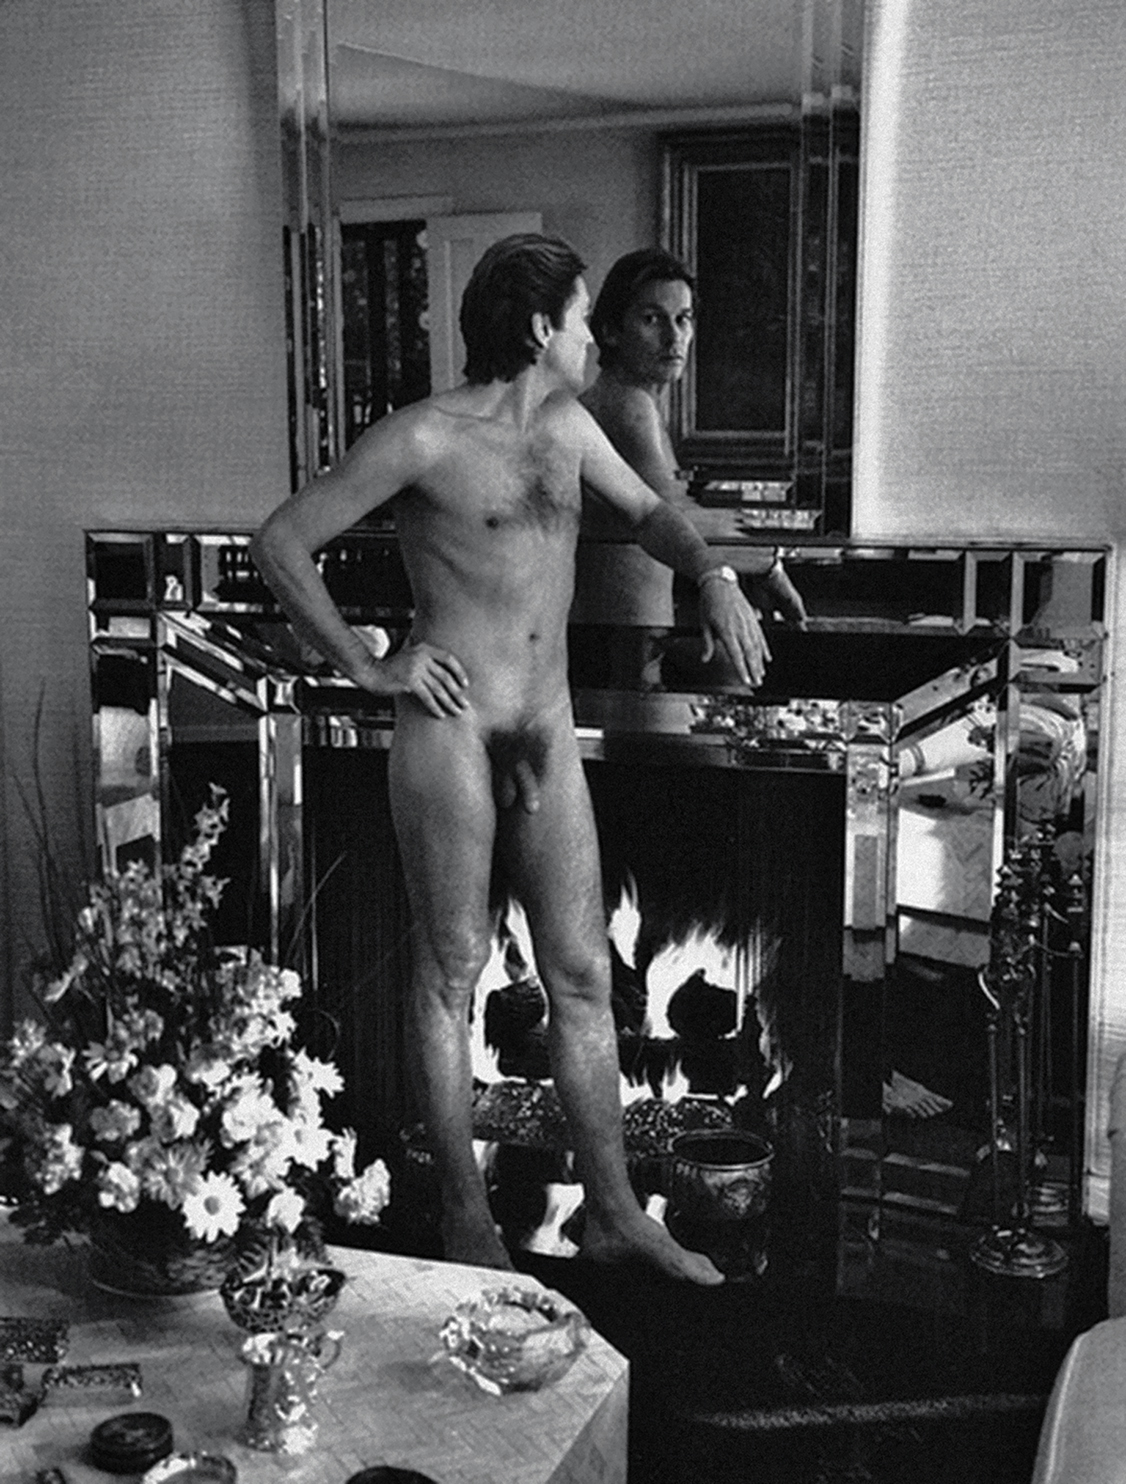 советский фильм с голыми мужчинами (120) фото